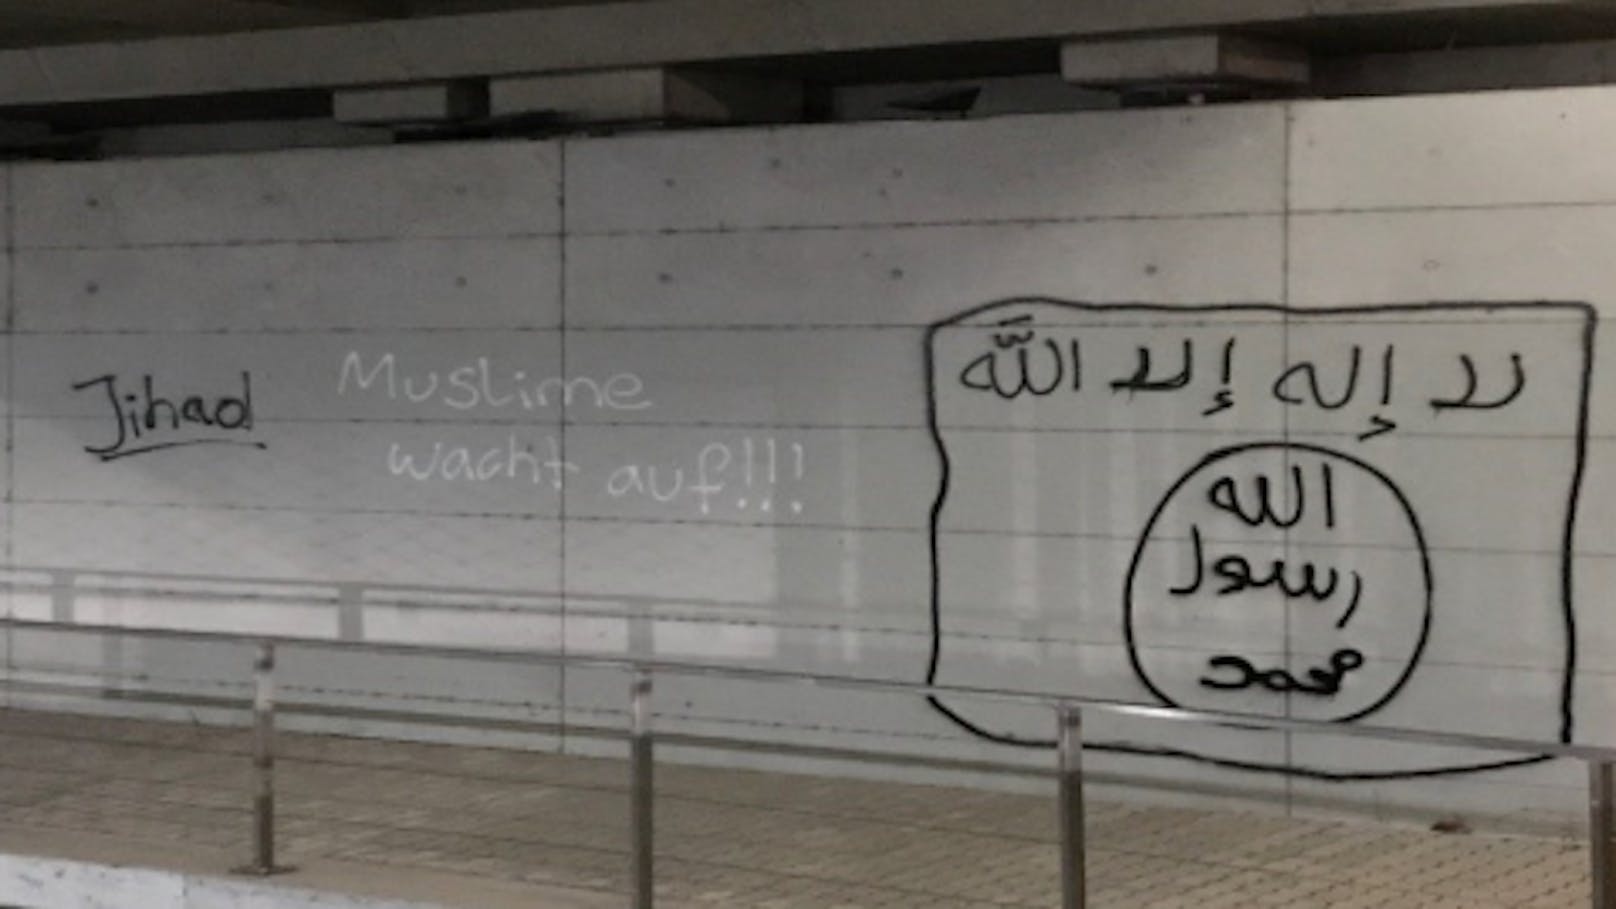 Die aufgesprühten Graffiti sind eindeutig und zweifelsfrei dem IS zuzuordnen.